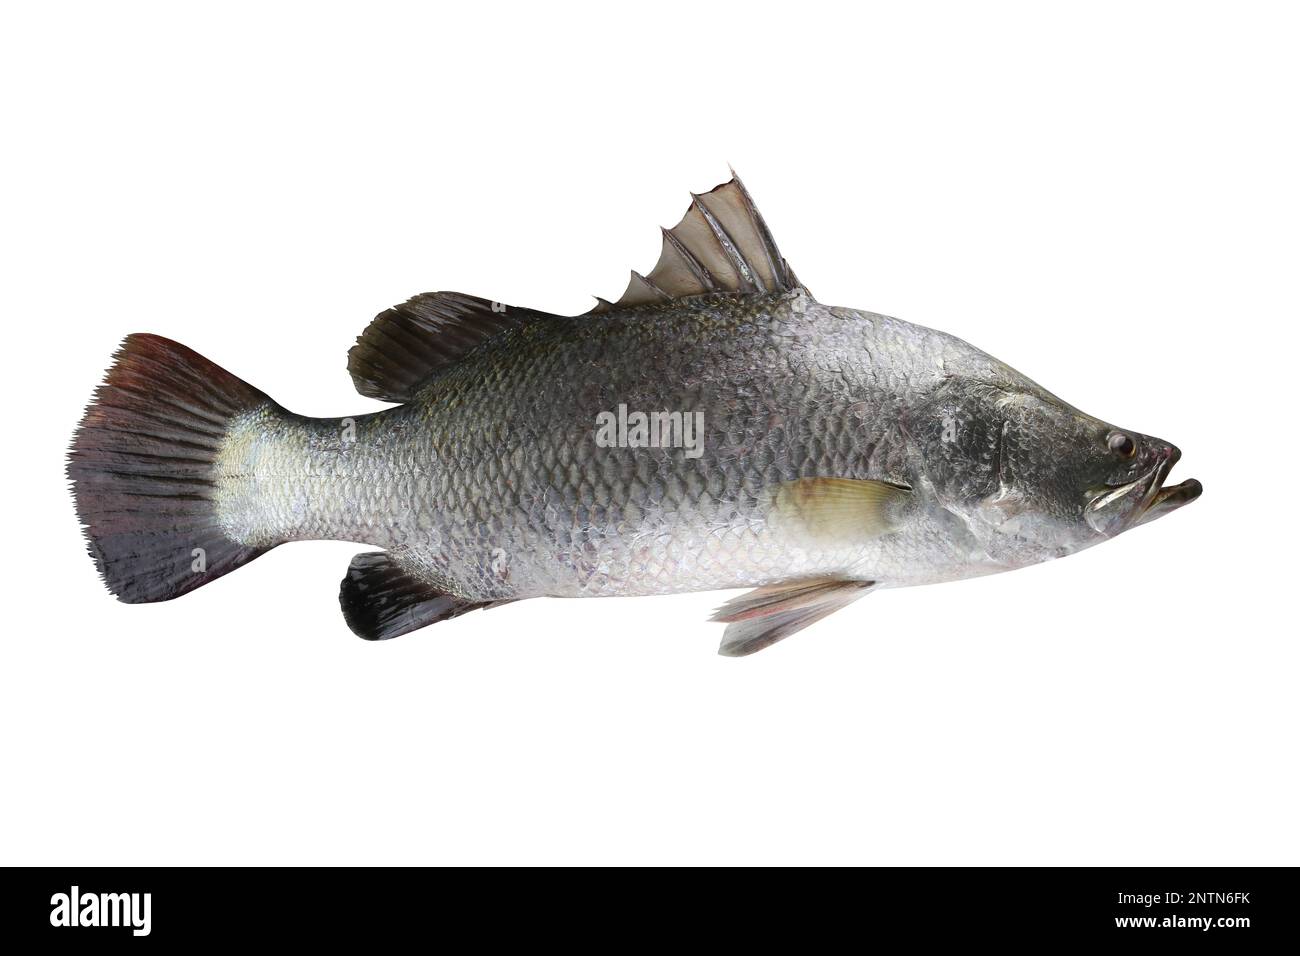 Barramundi fish Banque d'images détourées - Alamy